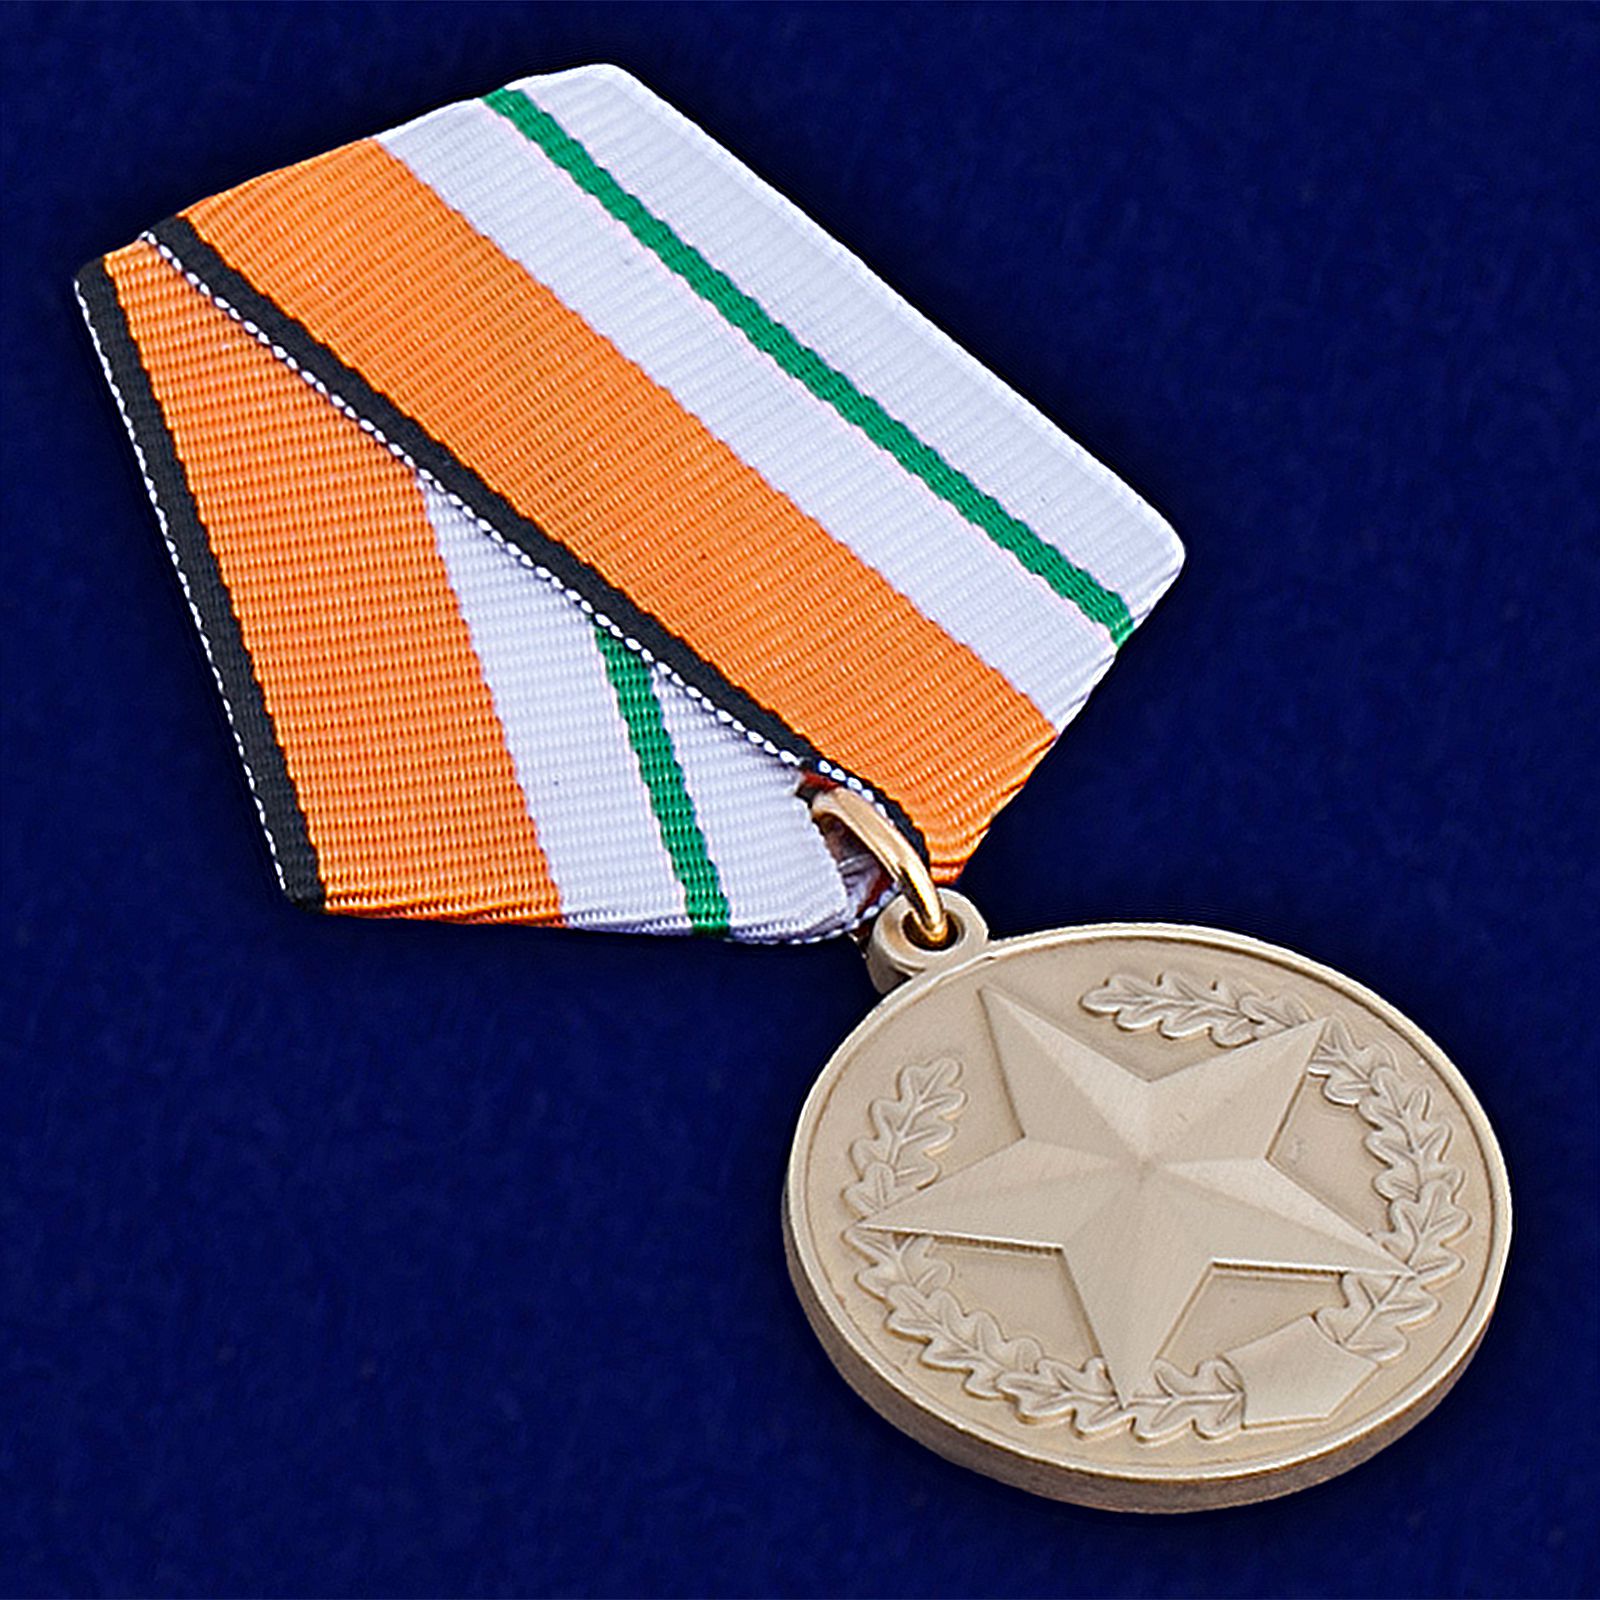 Медаль "За отличие в соревнованиях" (3 место)